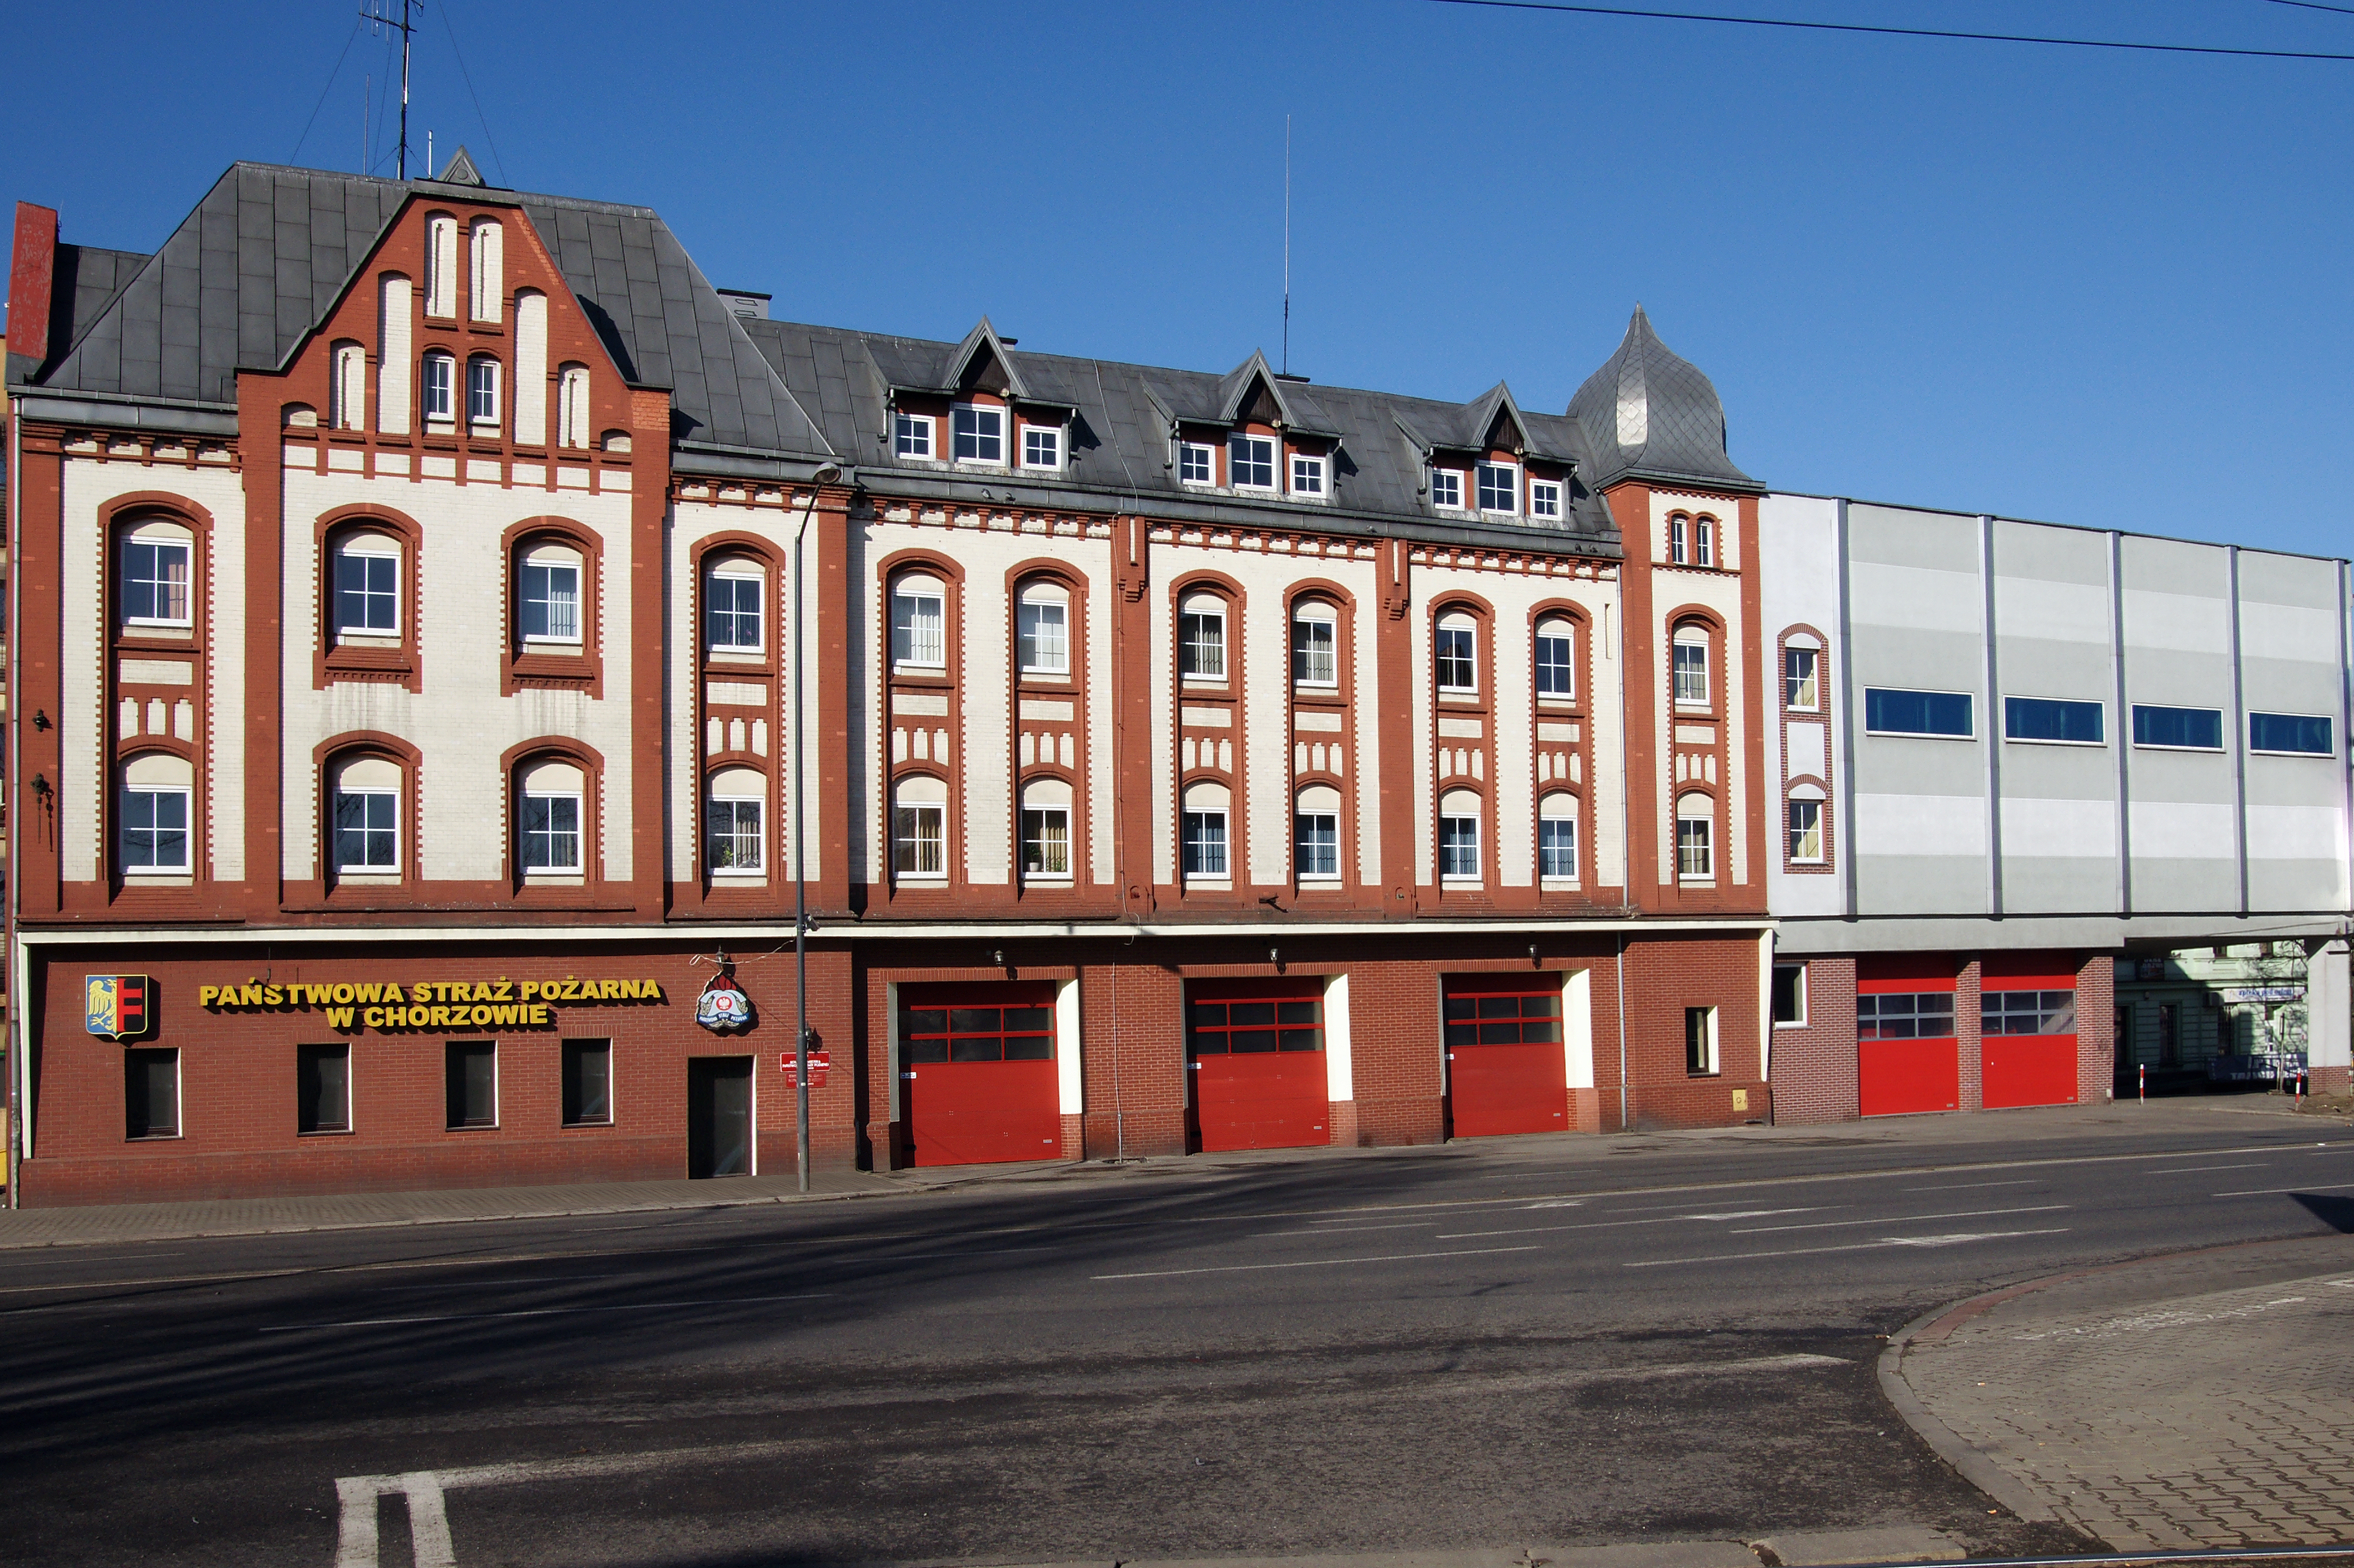 Na fotografii widać front budynku Państwowej Straży Pożarnej w Chorzowie